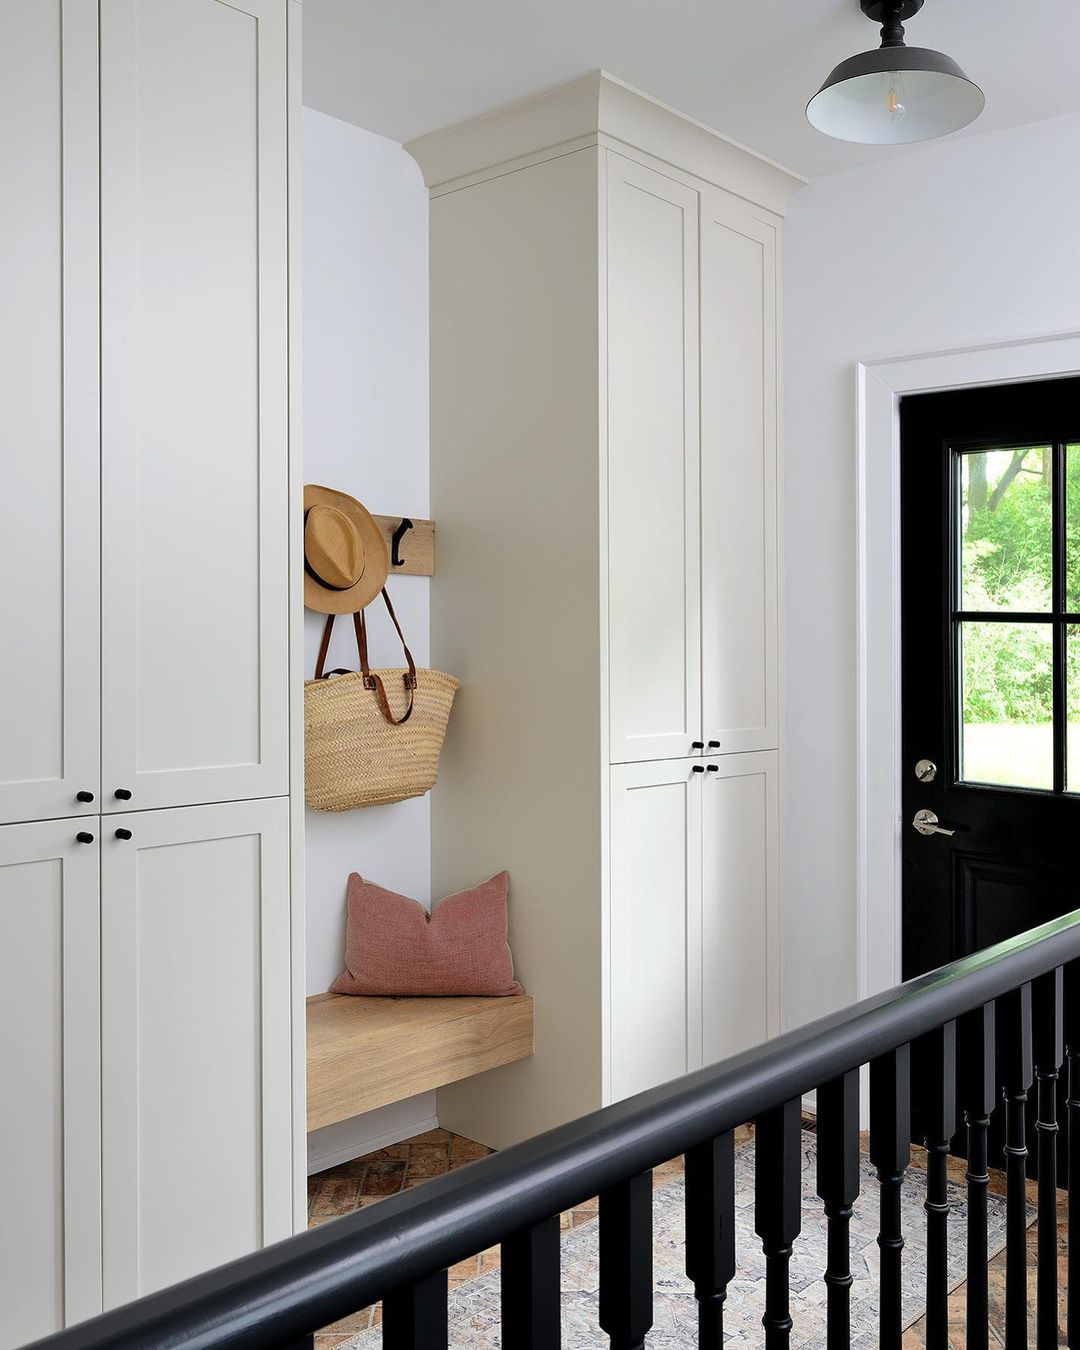 Ein Abstellraum in einem Eingangsbereich mit raumhohen Schränken, einem schwebenden Holzregal und einer hängenden Garderobe.